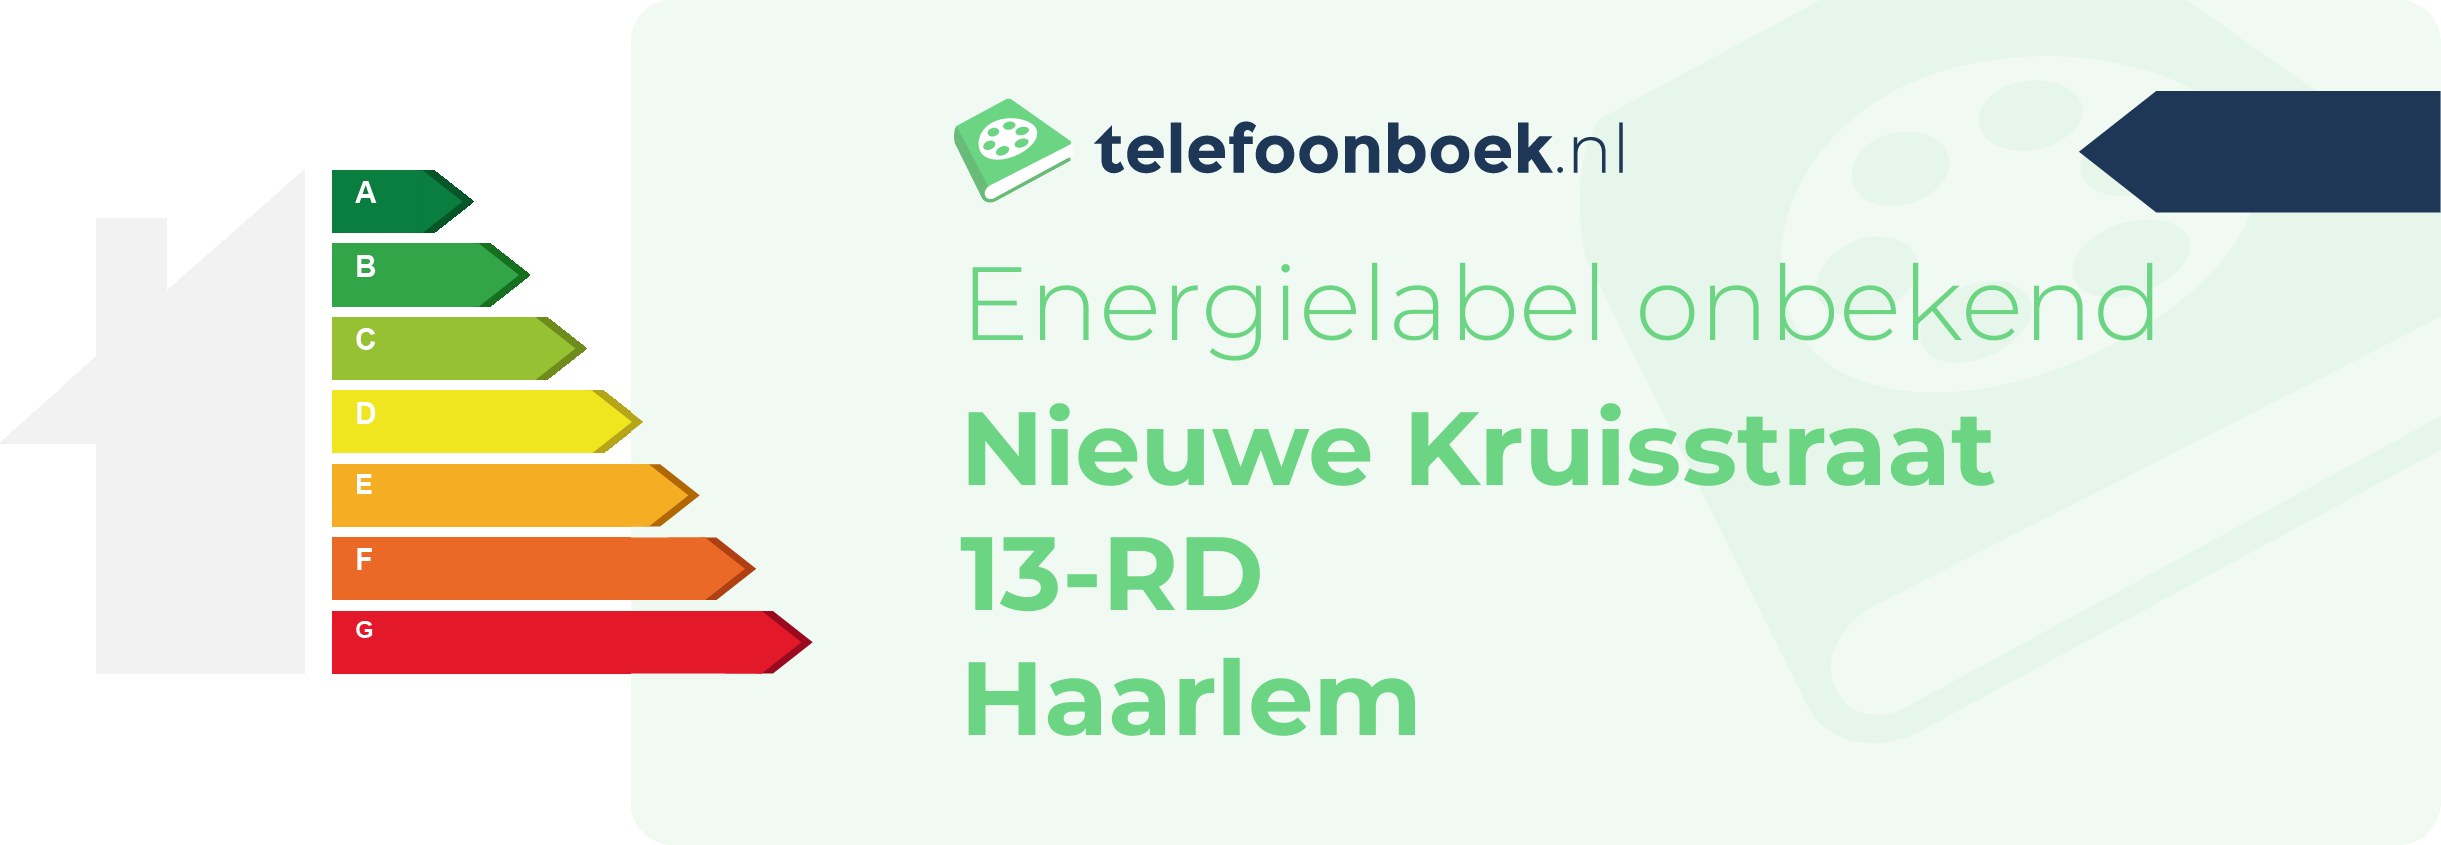 Energielabel Nieuwe Kruisstraat 13-RD Haarlem